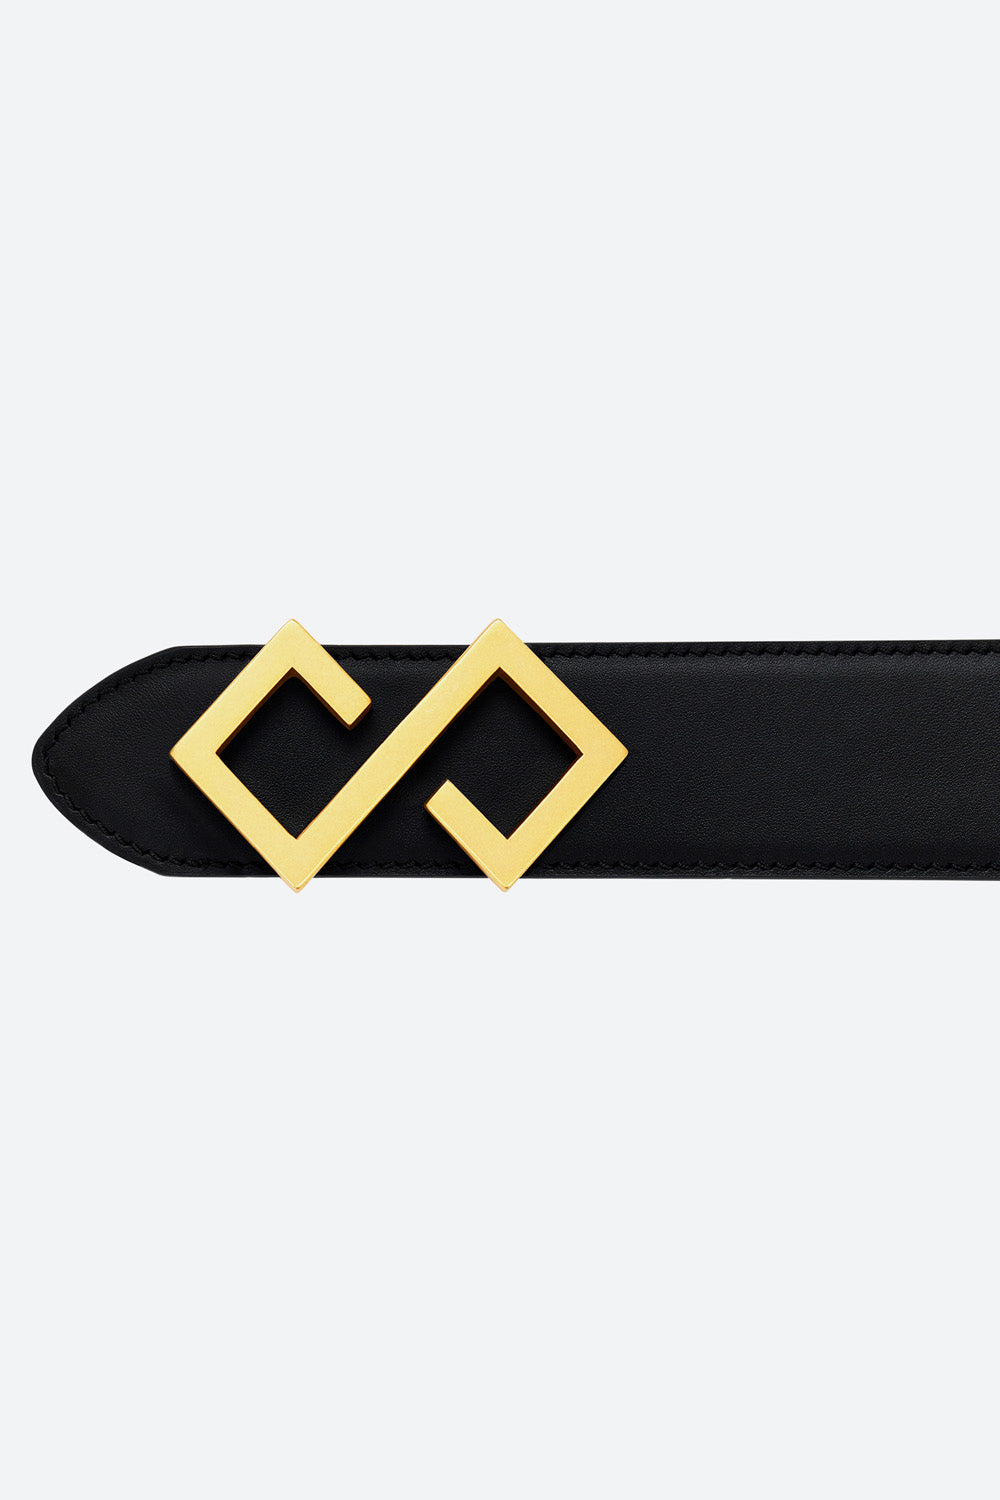 Women's Alvear Belt in Black, Gold-toned Buckle